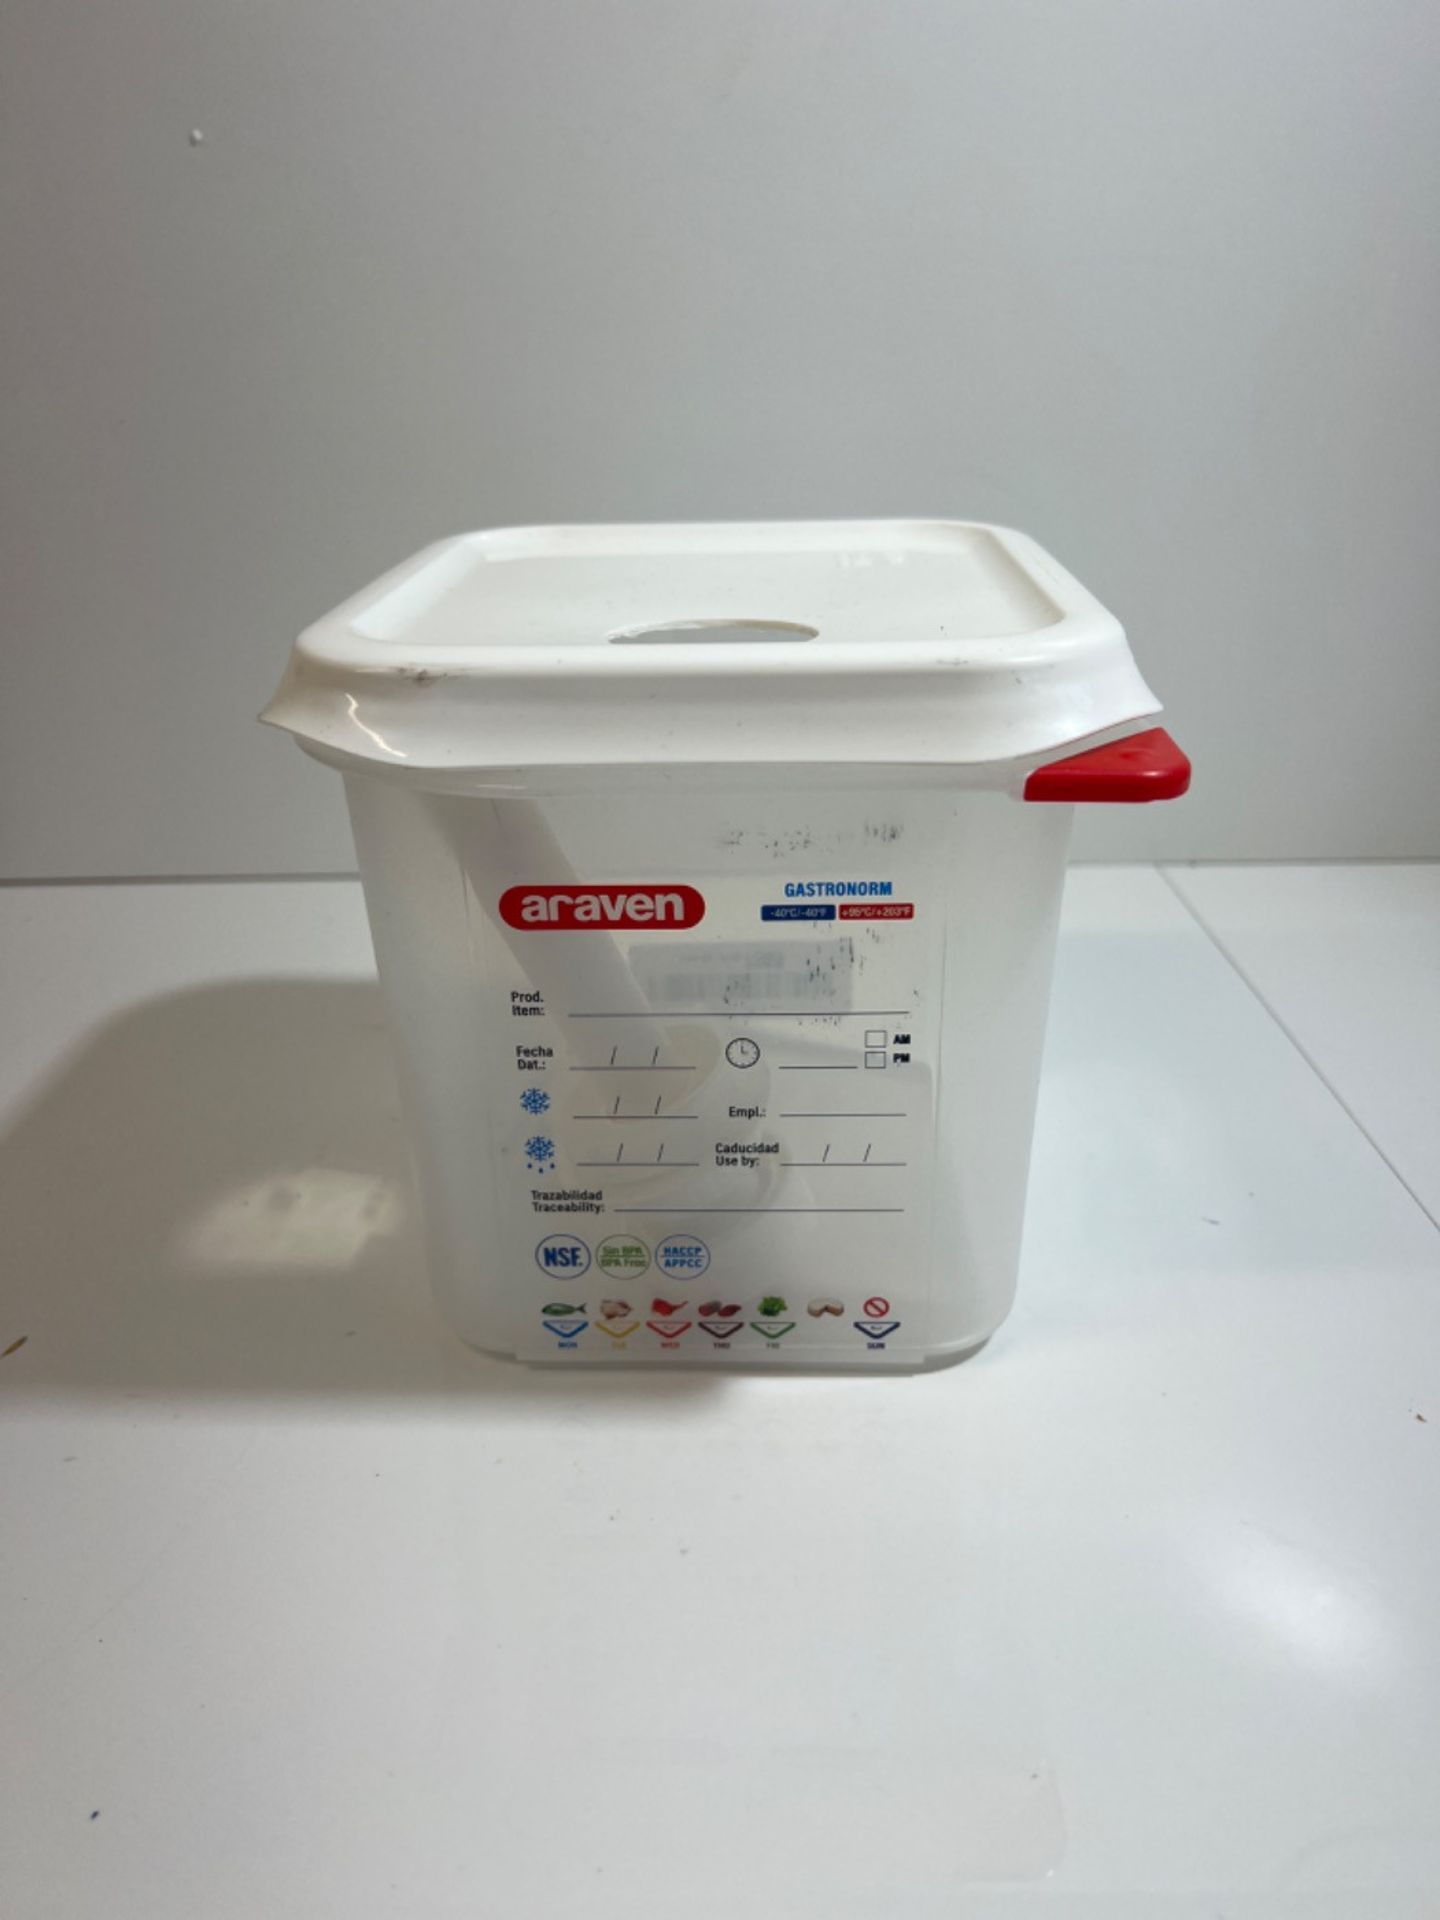 Araven RVN013 Sauce Dispenser Gn 1/6 Transparent 2.6Ltr Dishwasher Safe Push Pump - Image 2 of 3